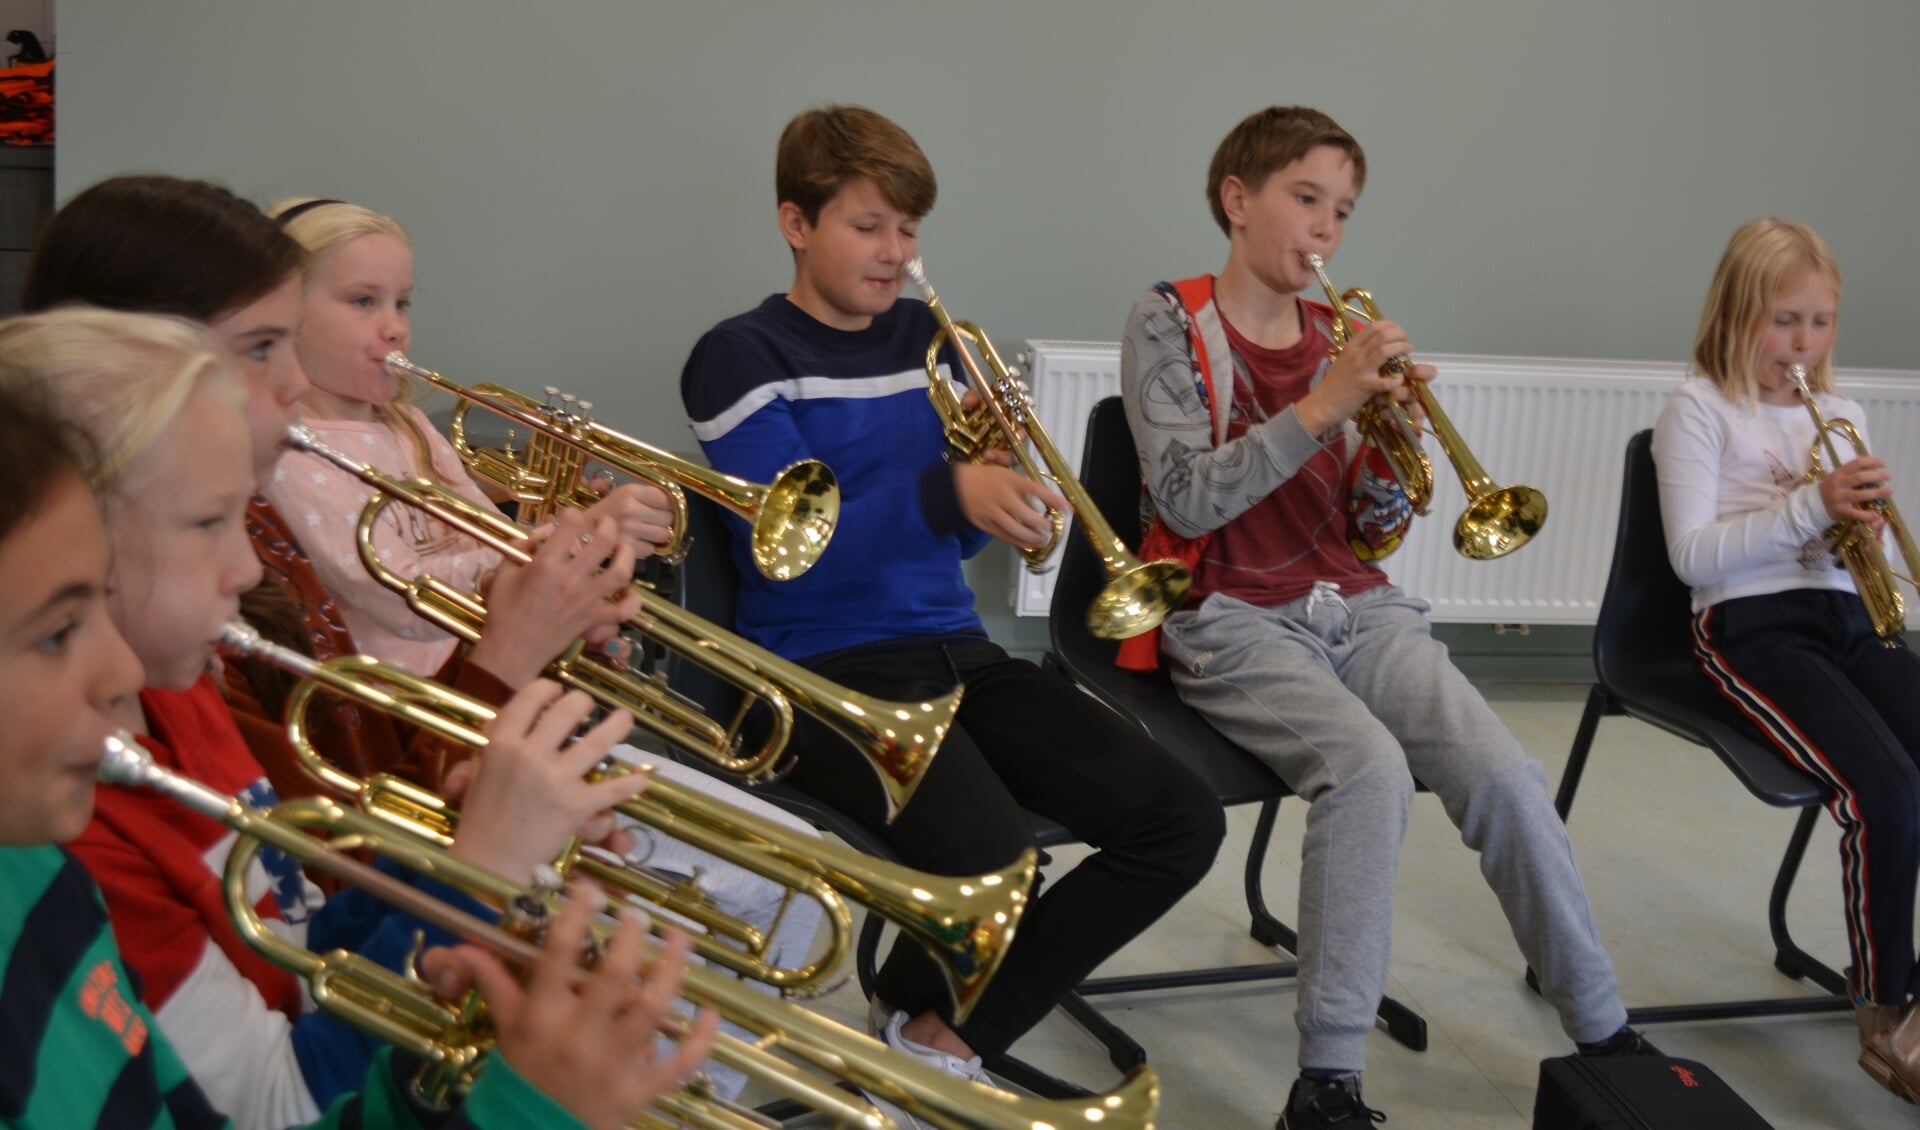 Alle kinderen krijgen de mogelijkheid om op een laagdrempelige manier verschillende muziekinstrumenten te ontdekken.